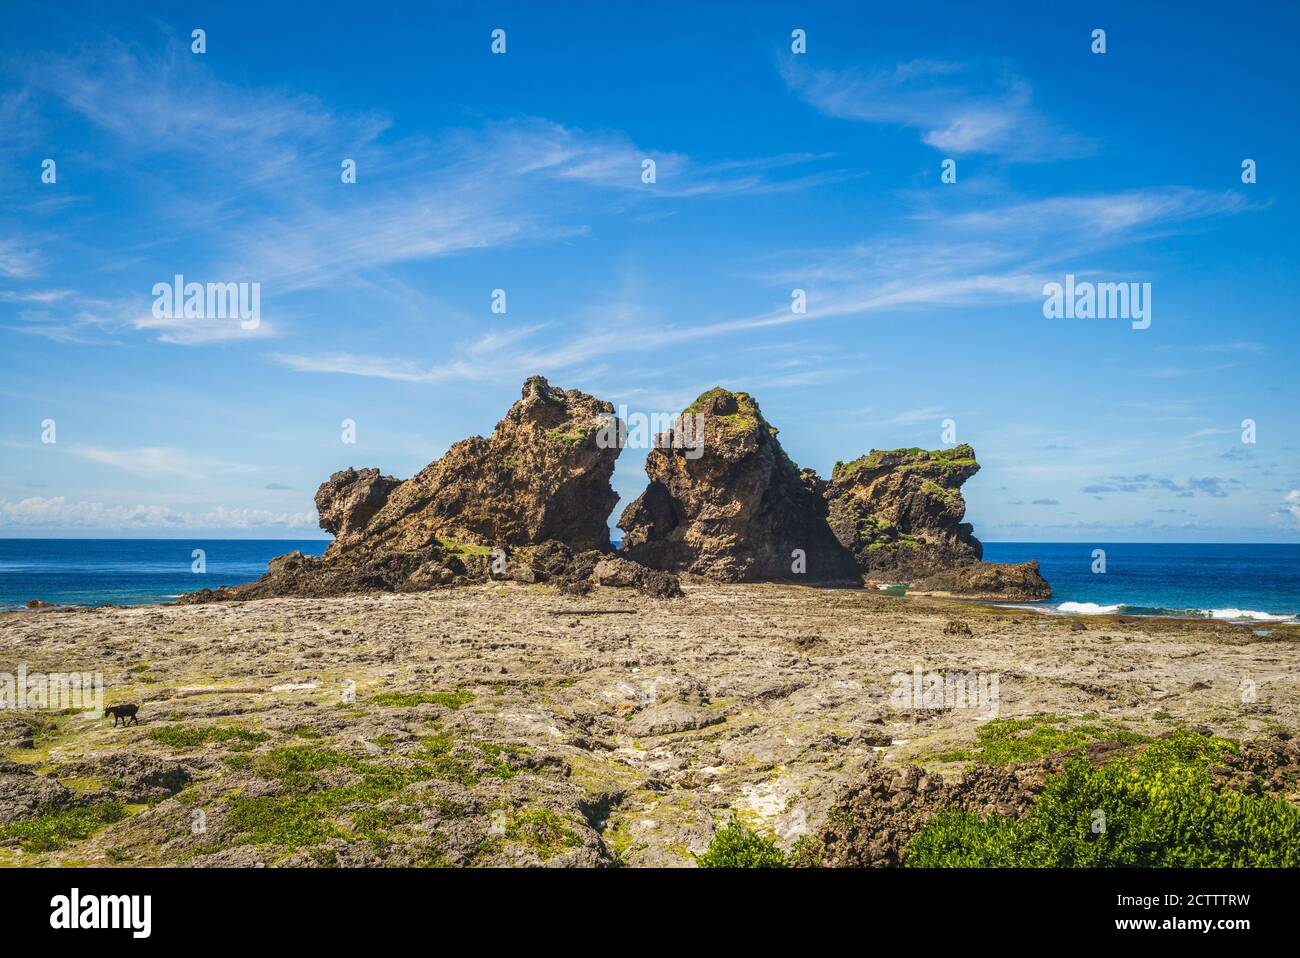 Lion couple Rock à l'île de Lanyu, taitung, taïwan Banque D'Images